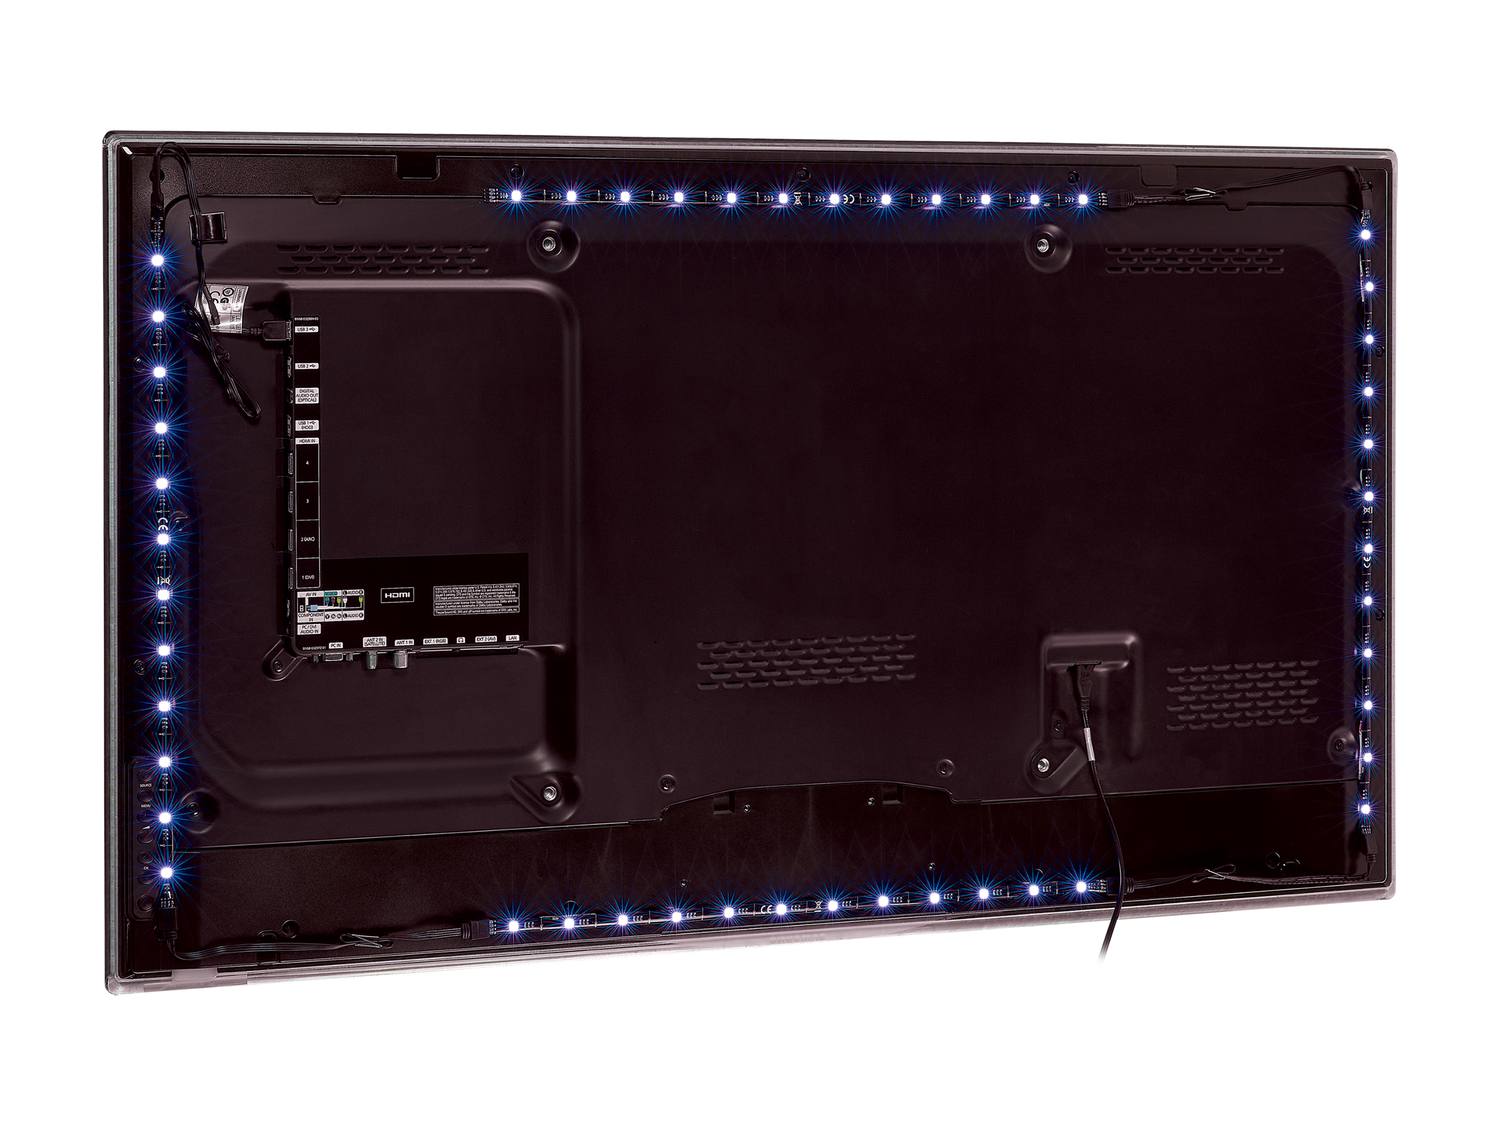 Kit de rétro-éclairage pour TV , le prix 7.99 € 
- 4 bandes LED autocollantes ...